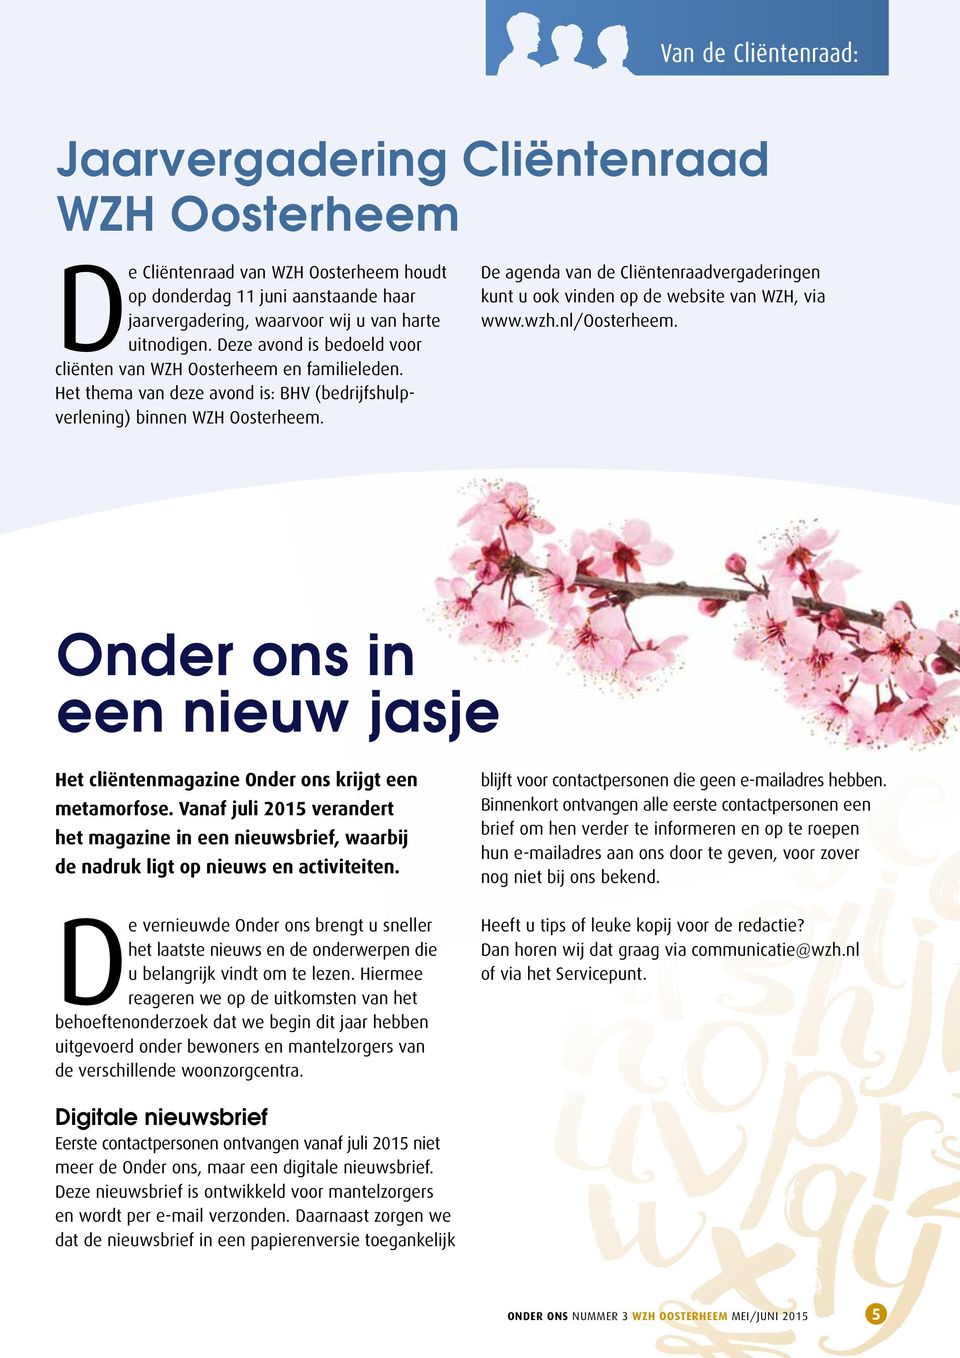 De agenda van de Cliëntenraadvergaderingen kunt u ook vinden op de website van WZH, via www.wzh.nl/oosterheem. Onder ons in een nieuw jasje Het cliëntenmagazine Onder ons krijgt een metamorfose.